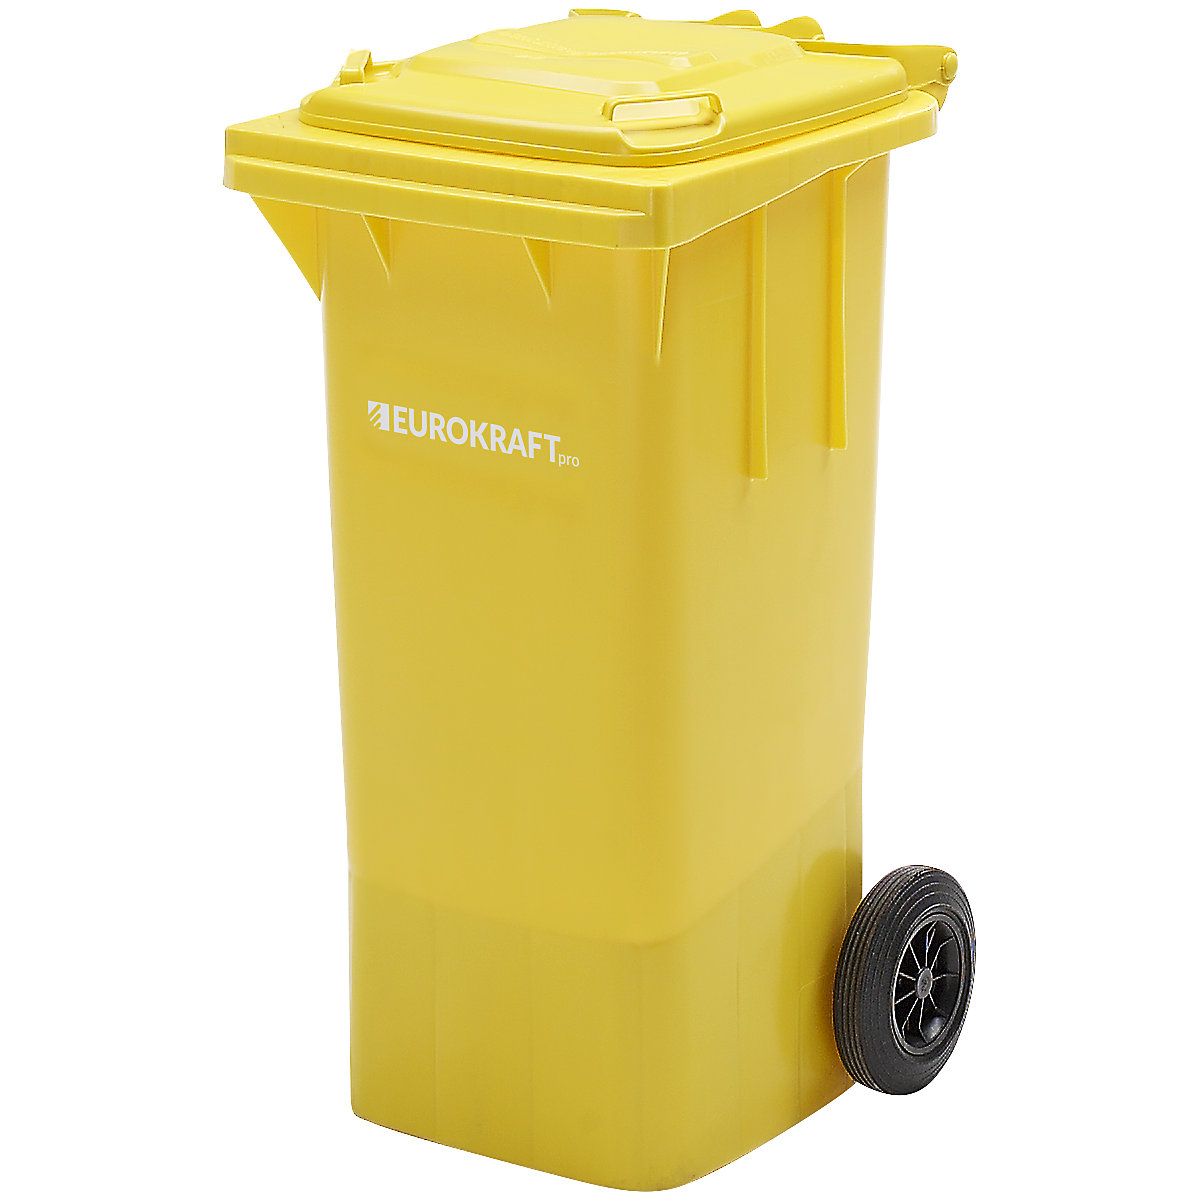 Contentor de lixo em plástico DIN EN 840 – eurokraft pro (Imagem do produto 13)-12